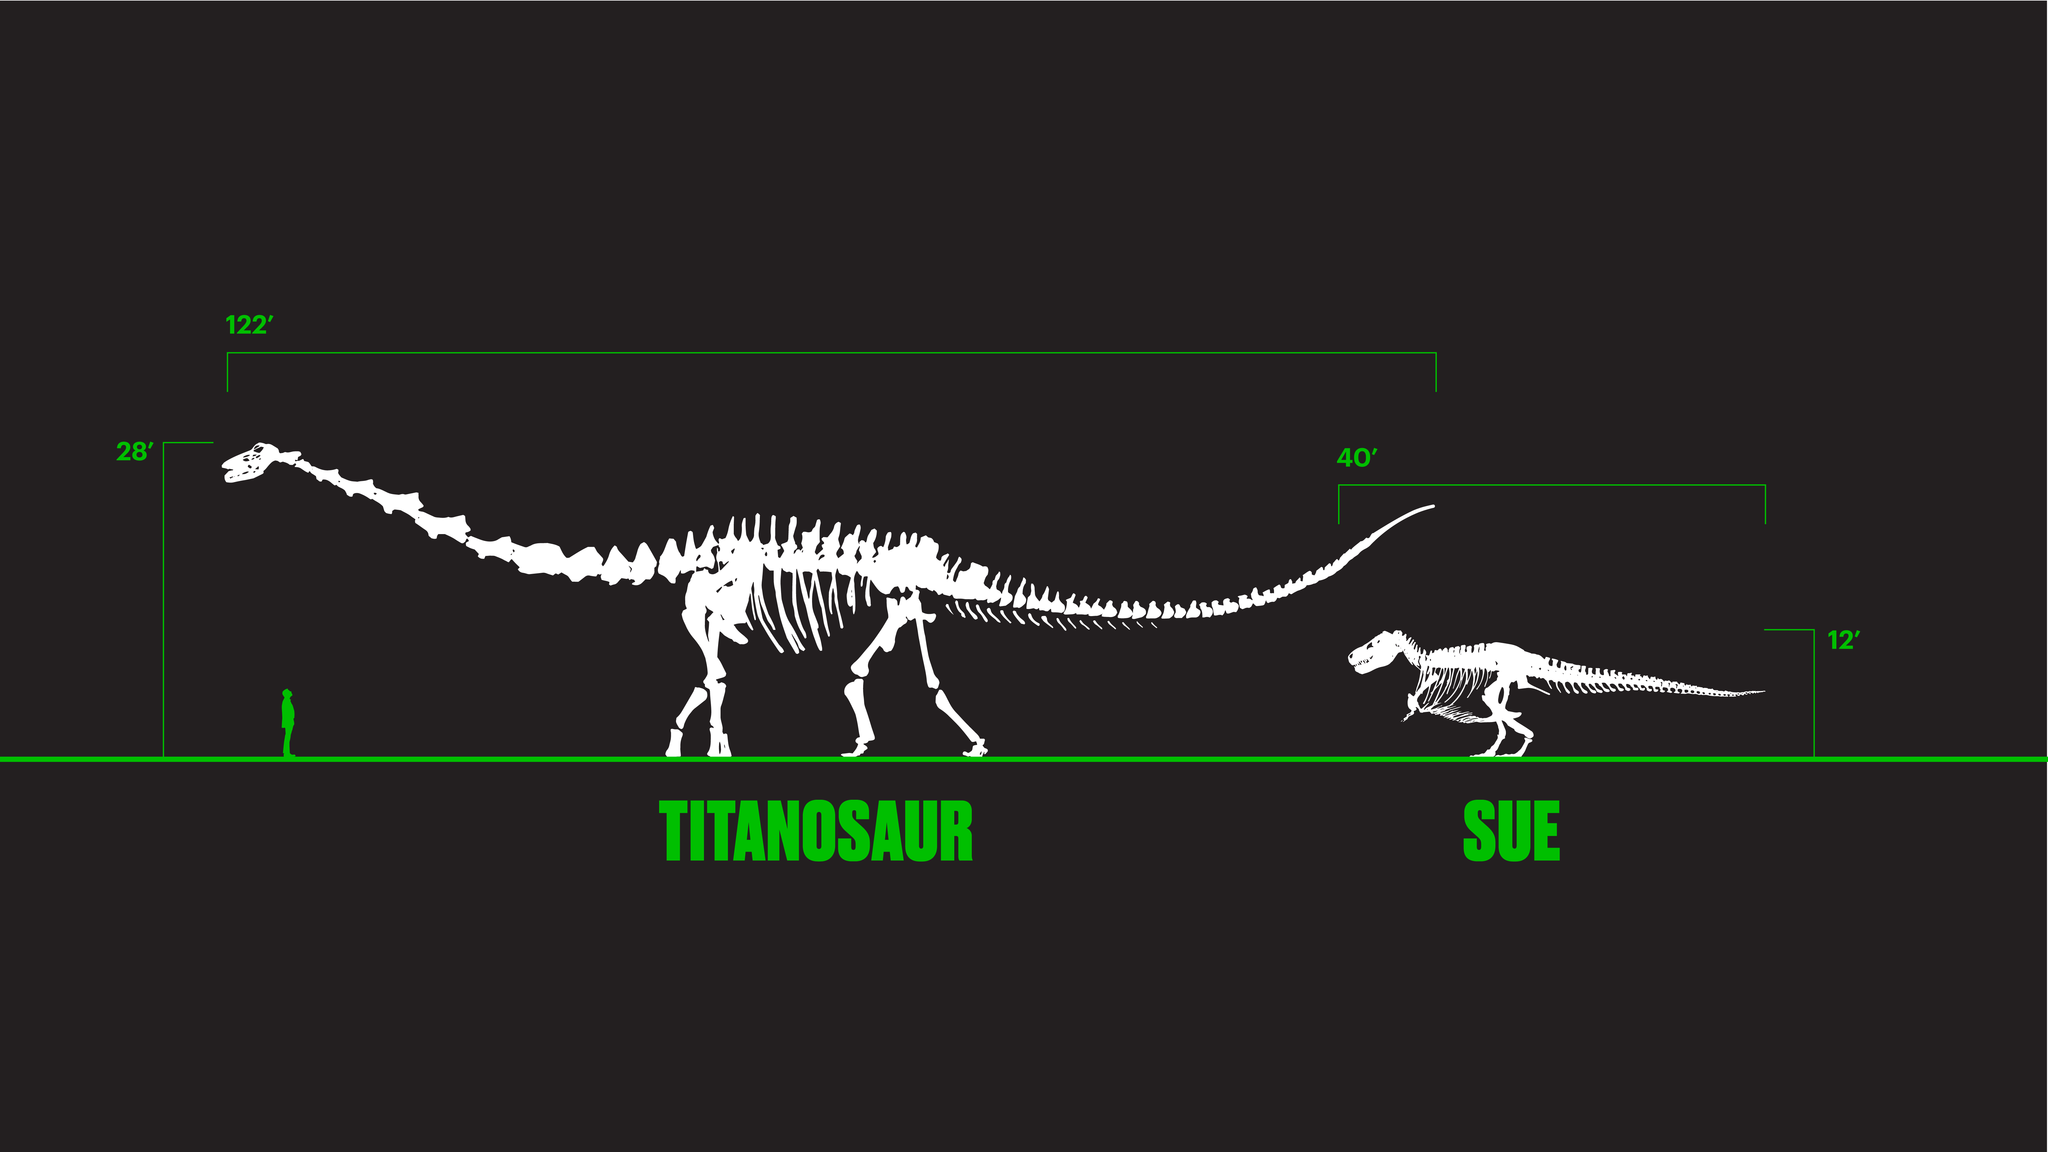 Titanosaur and SUE